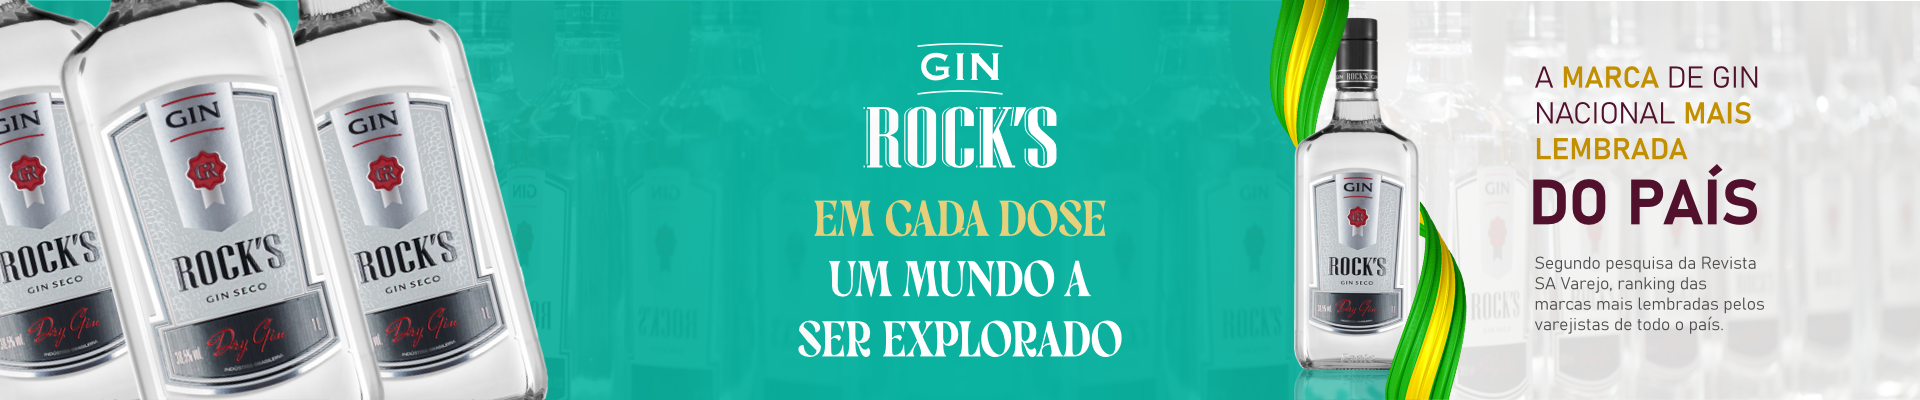 Carrossel Gin Rocks 